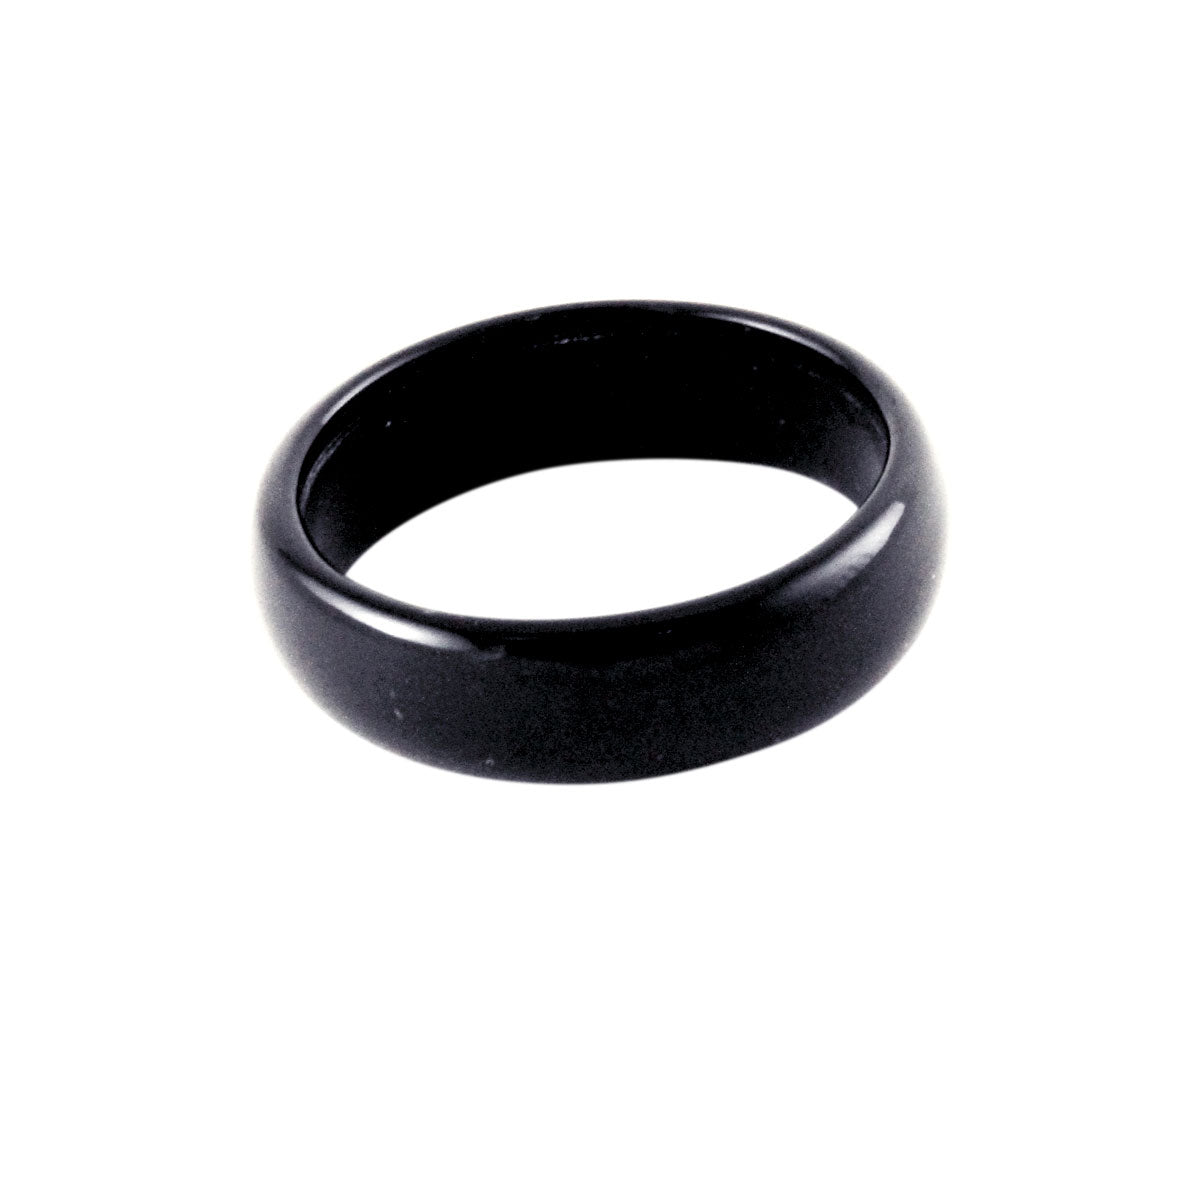 Black Onyx Stone Band Ring